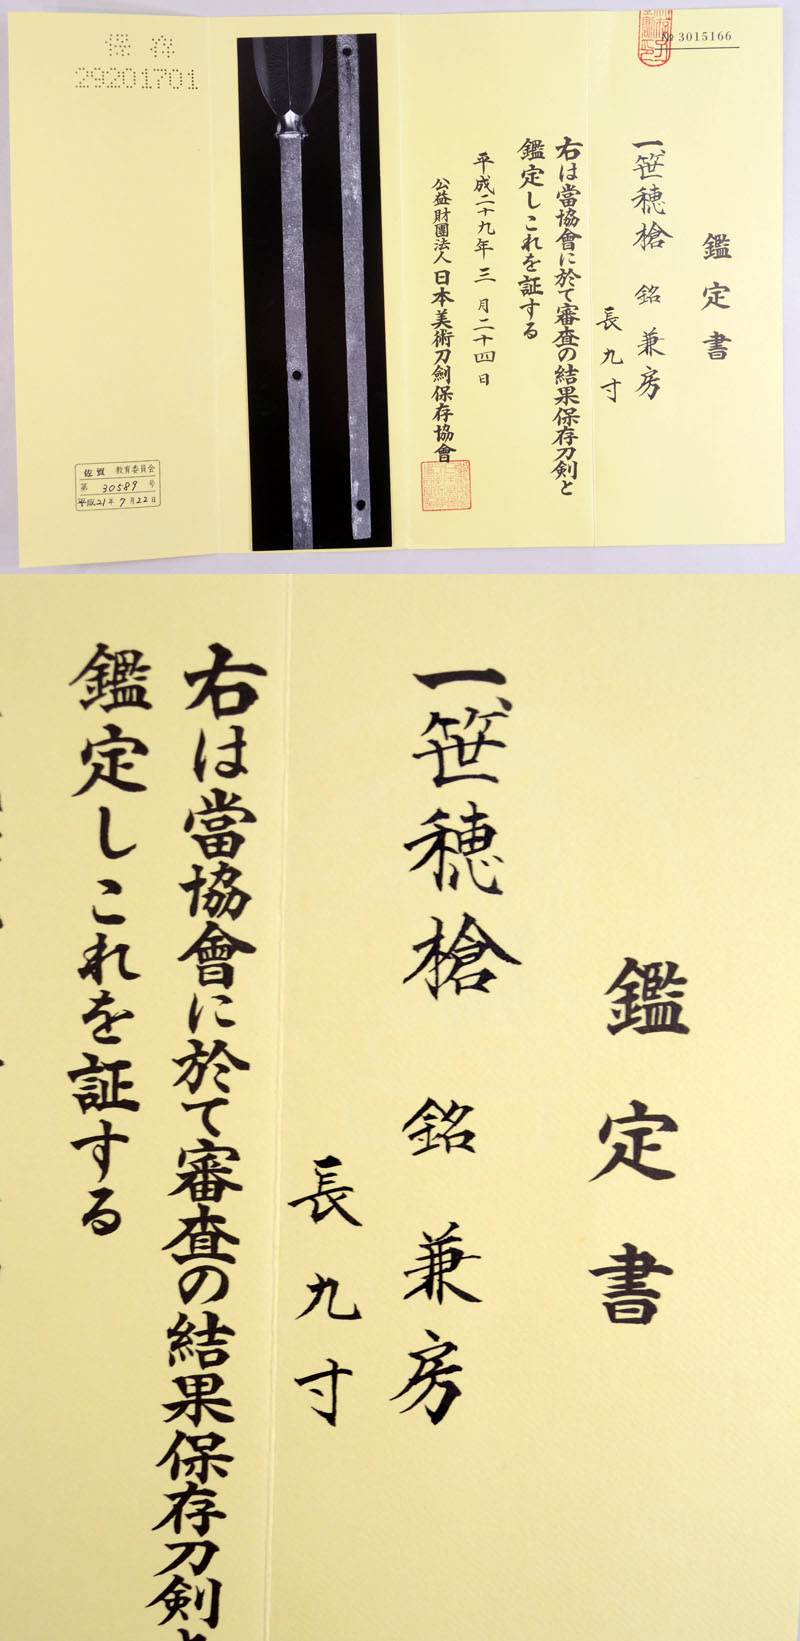 兼房 Picture of Certificate